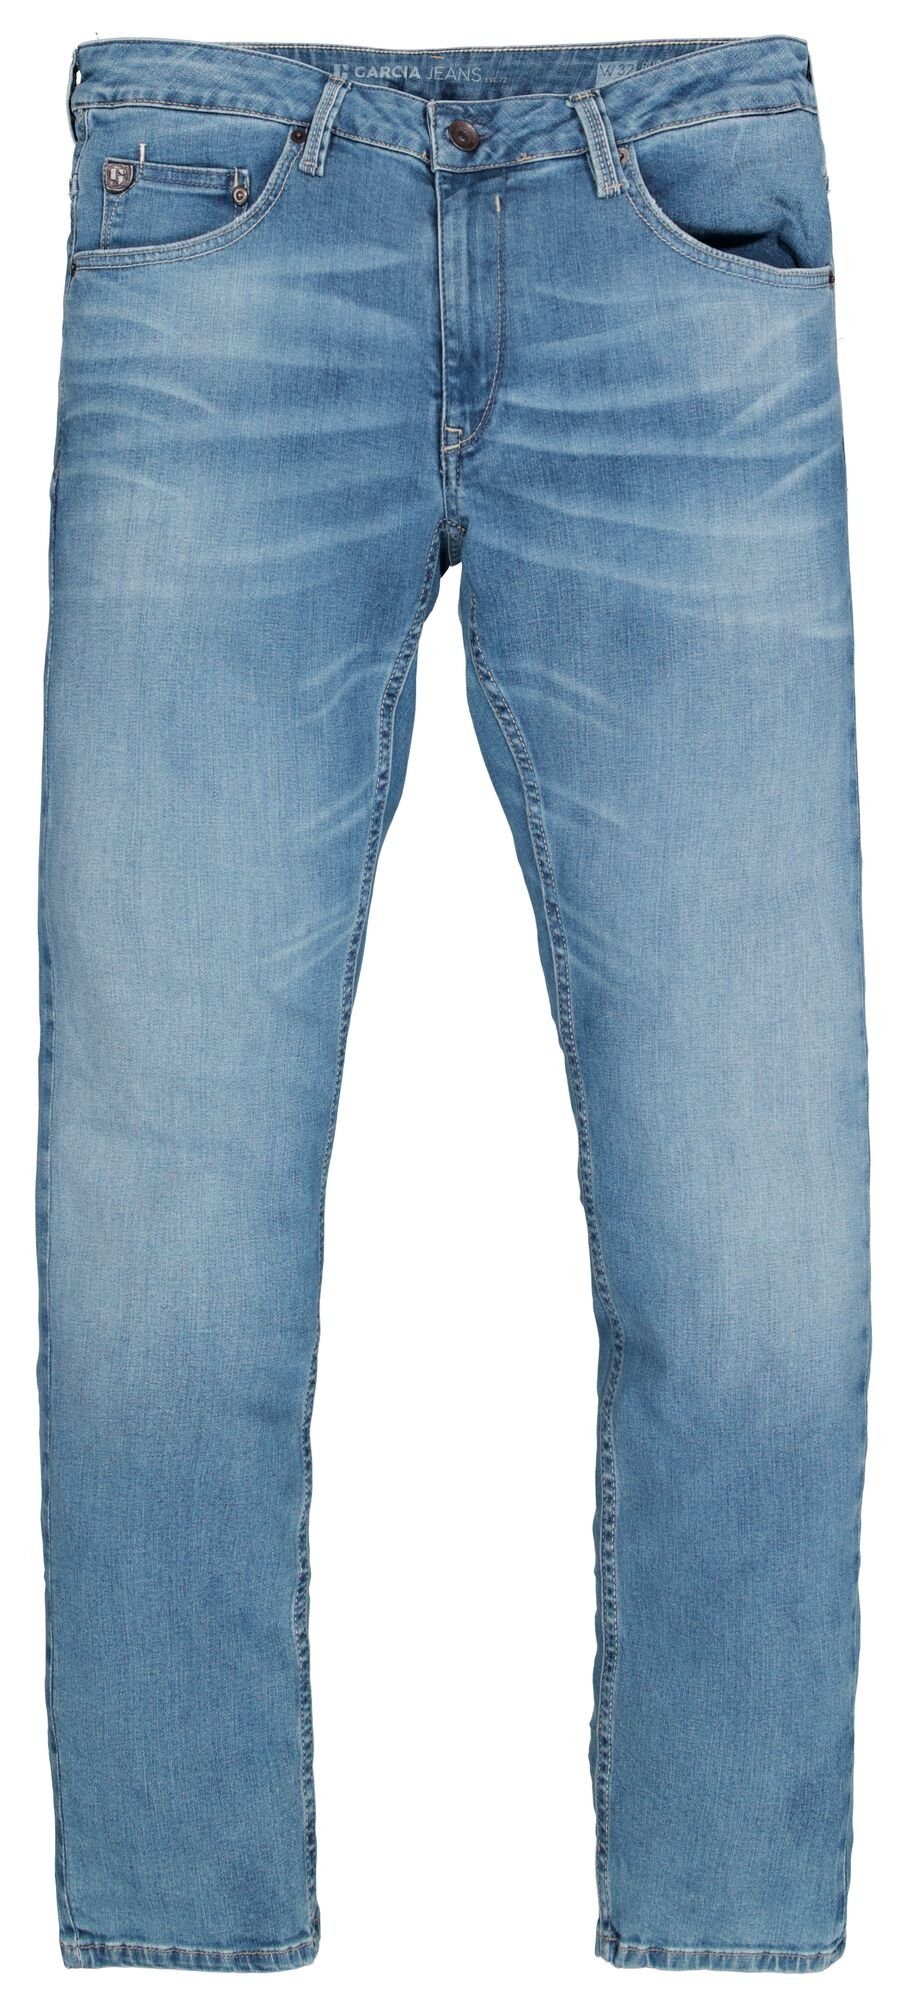 light RUSSO 611.6545 Denim JEANS 5-Pocket-Jeans - GARCIA blue used Motion GARCIA